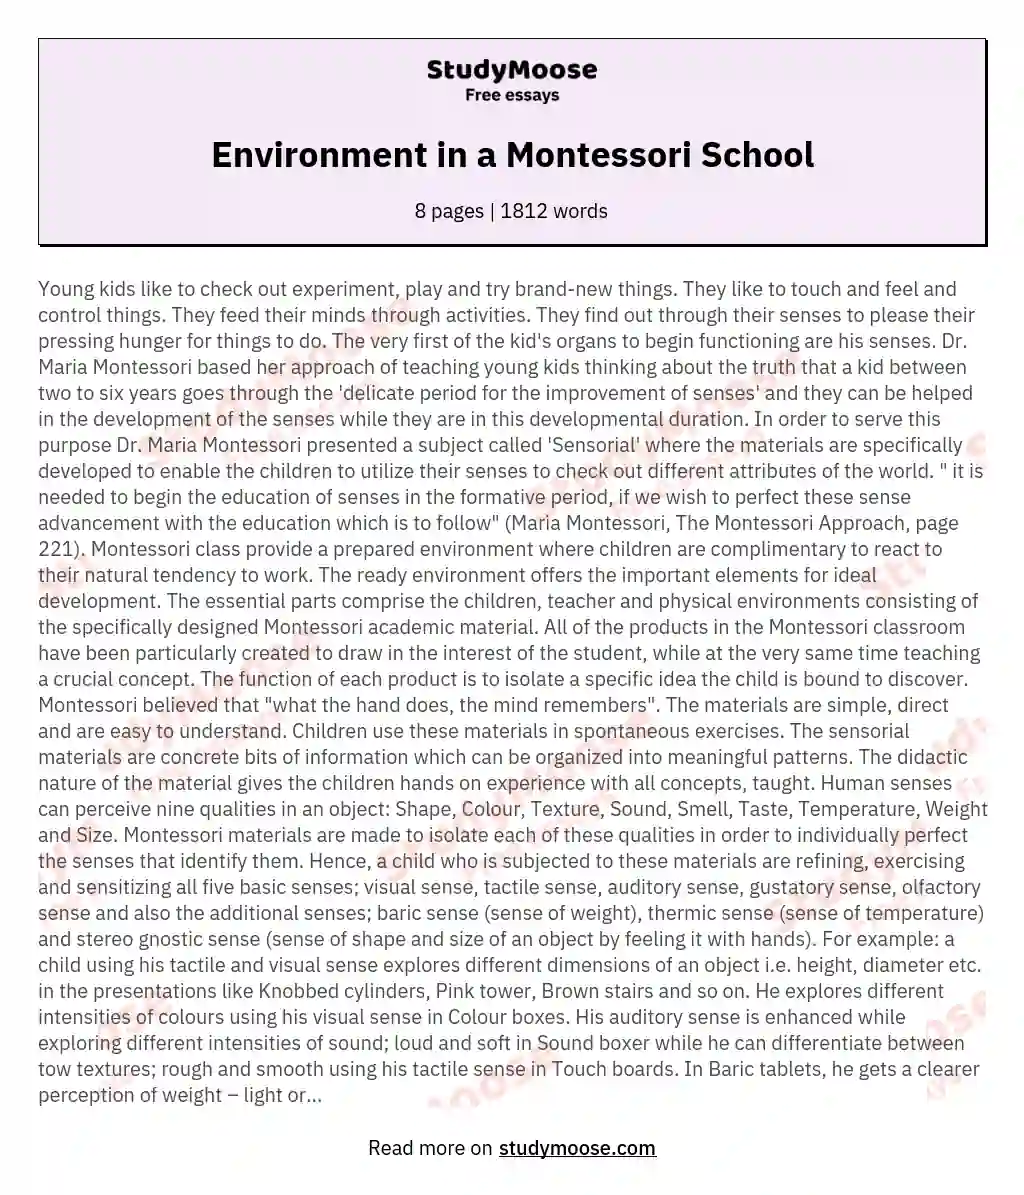 Environment in a Montessori School essay